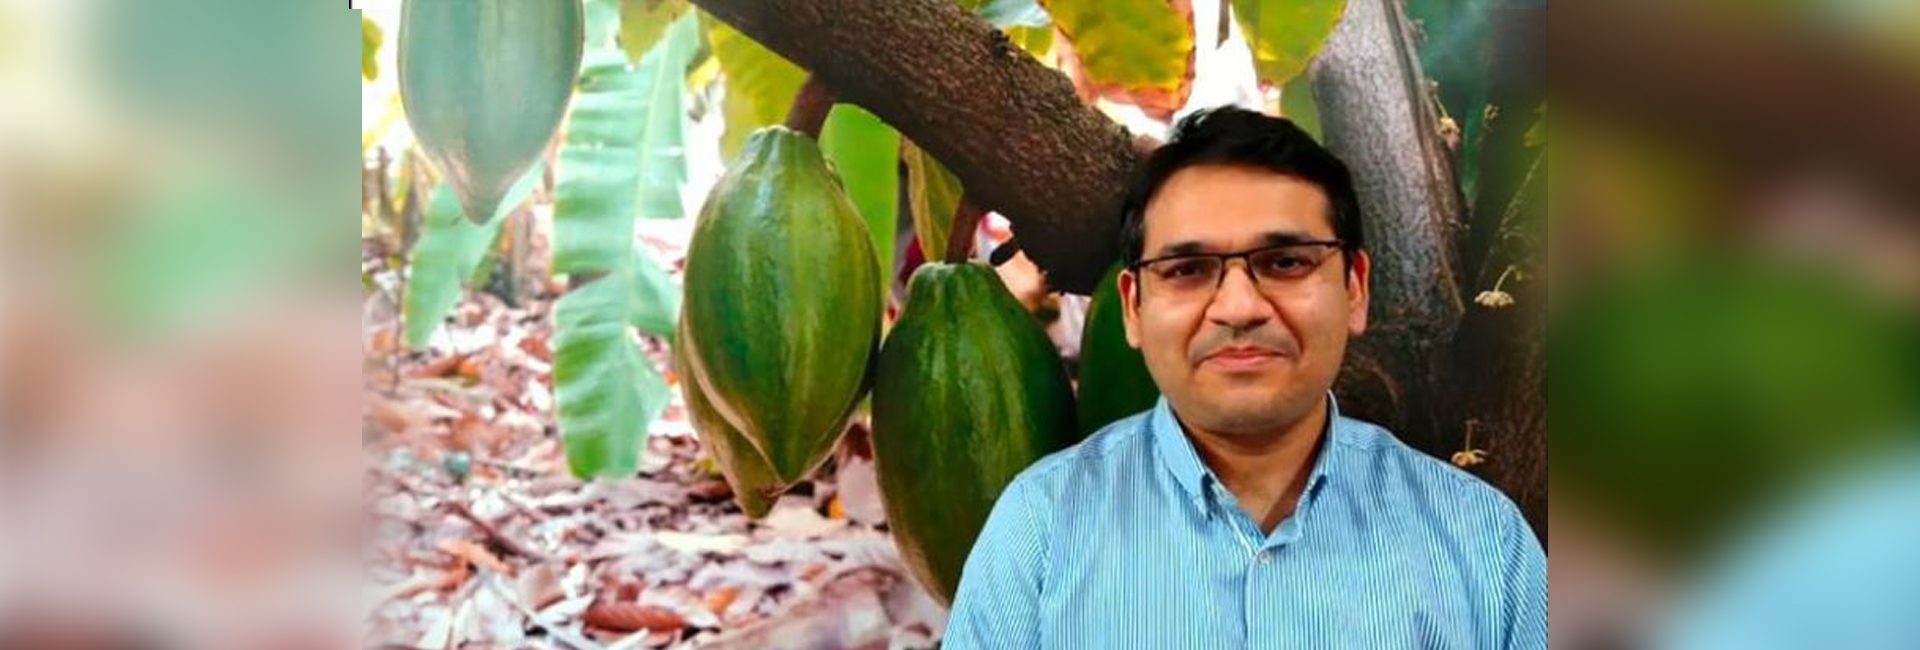 Nitin Chordia, de eerste gecertificeerde chocoladeproever van het land, serveert chocolade 'Made in India' in de ware zin van het woord